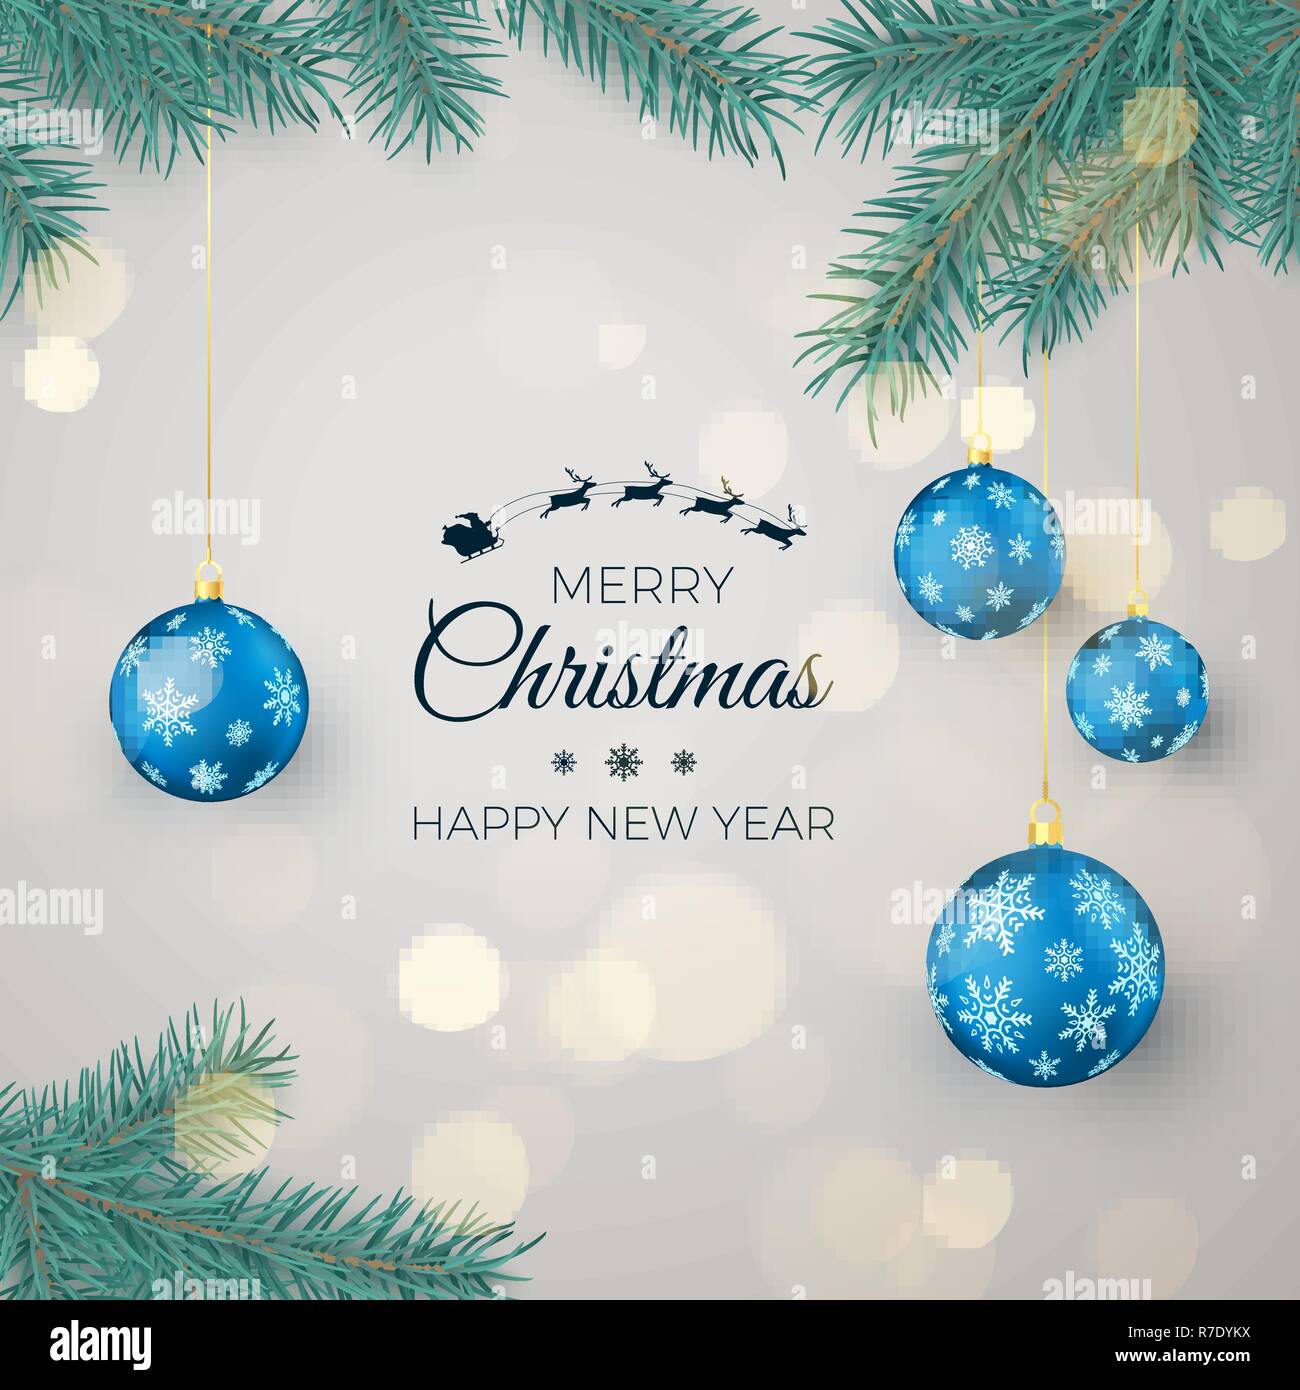 Frohes Neues Jahr Hintergrund für saisonale Grußkarten und Banner. Blaue Weihnachtskugeln hängen auf dem Pine Niederlassungen und Begrüßungstext. Vektor Lllustrat Stock Vektor